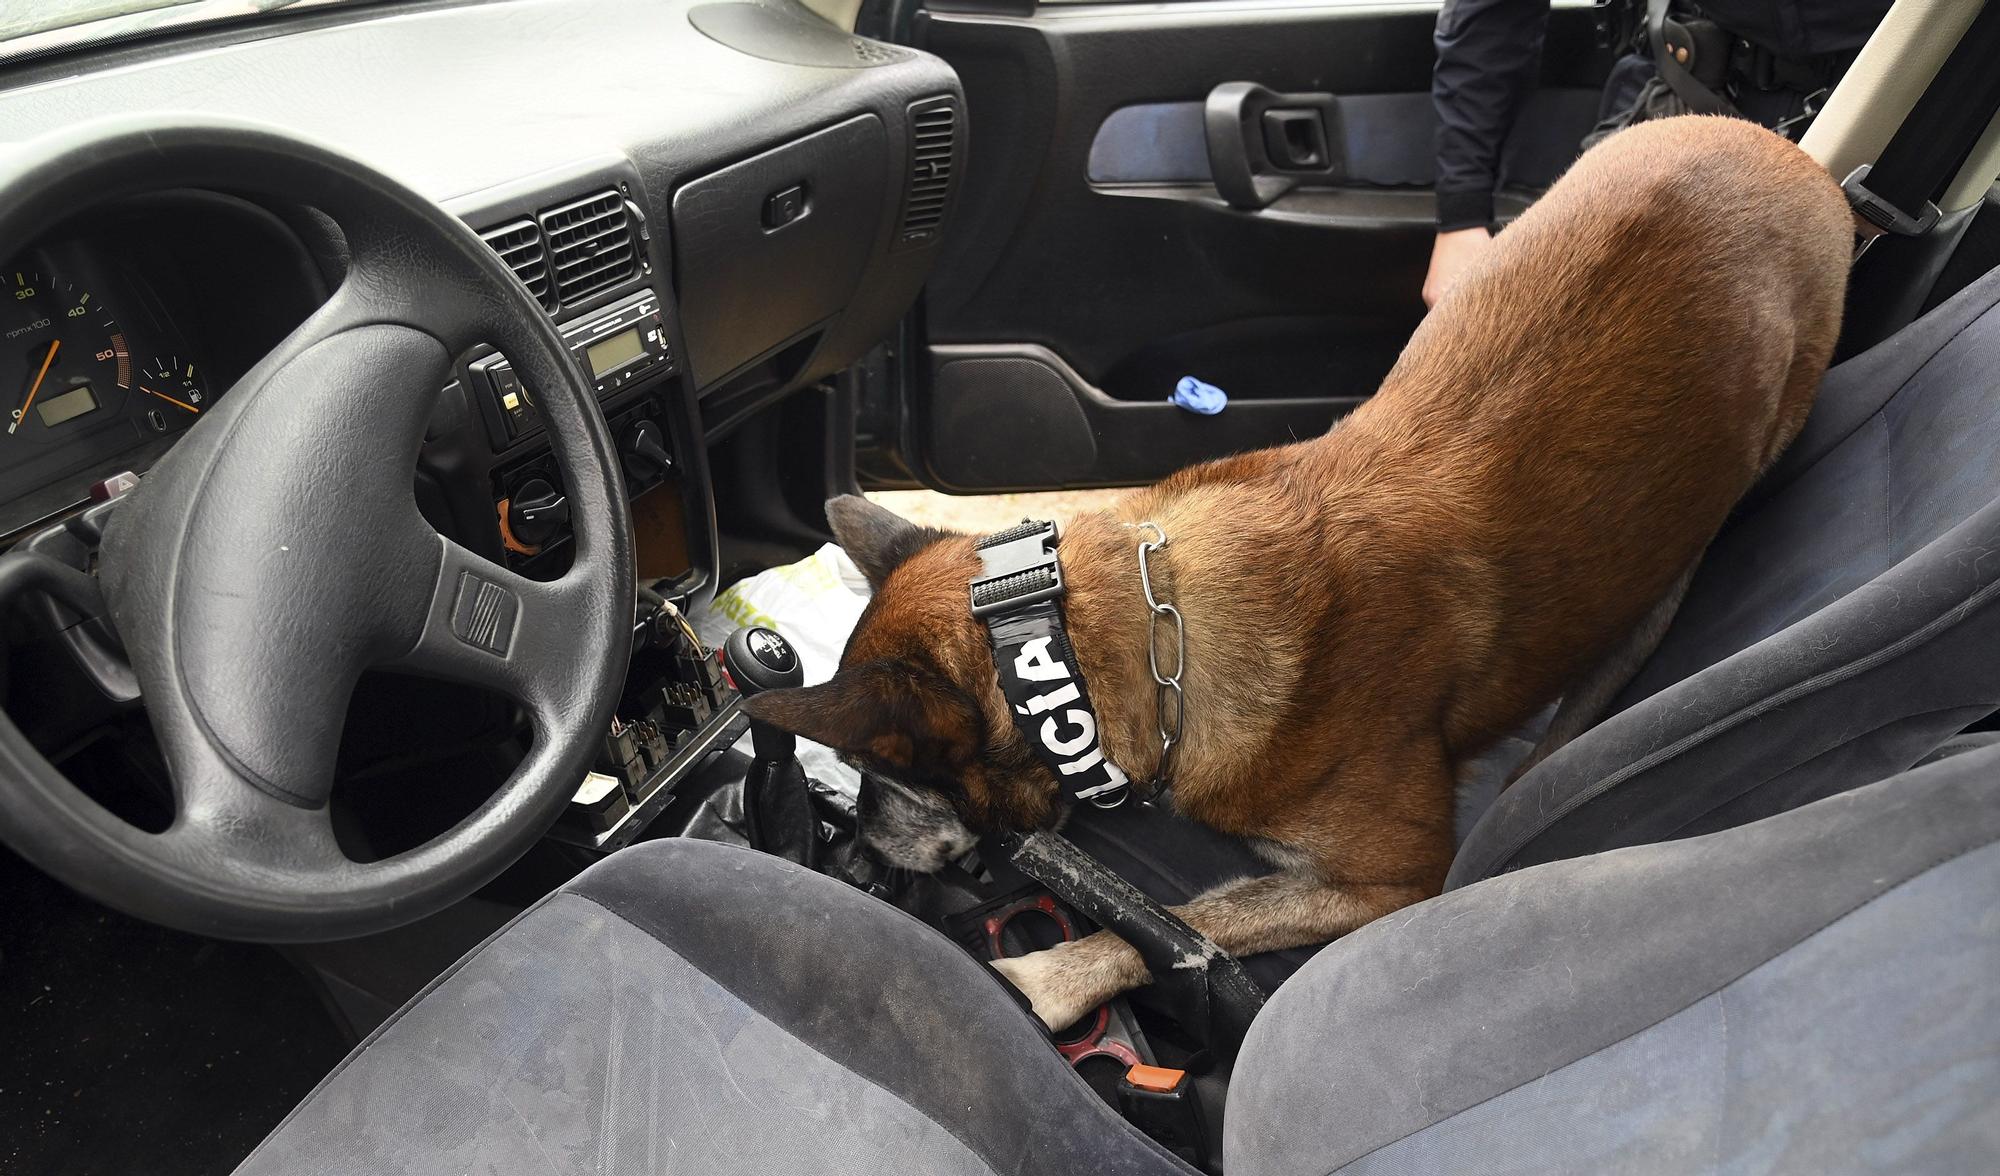 GALERÍA | Perros policía de la unidad canina de Burgos